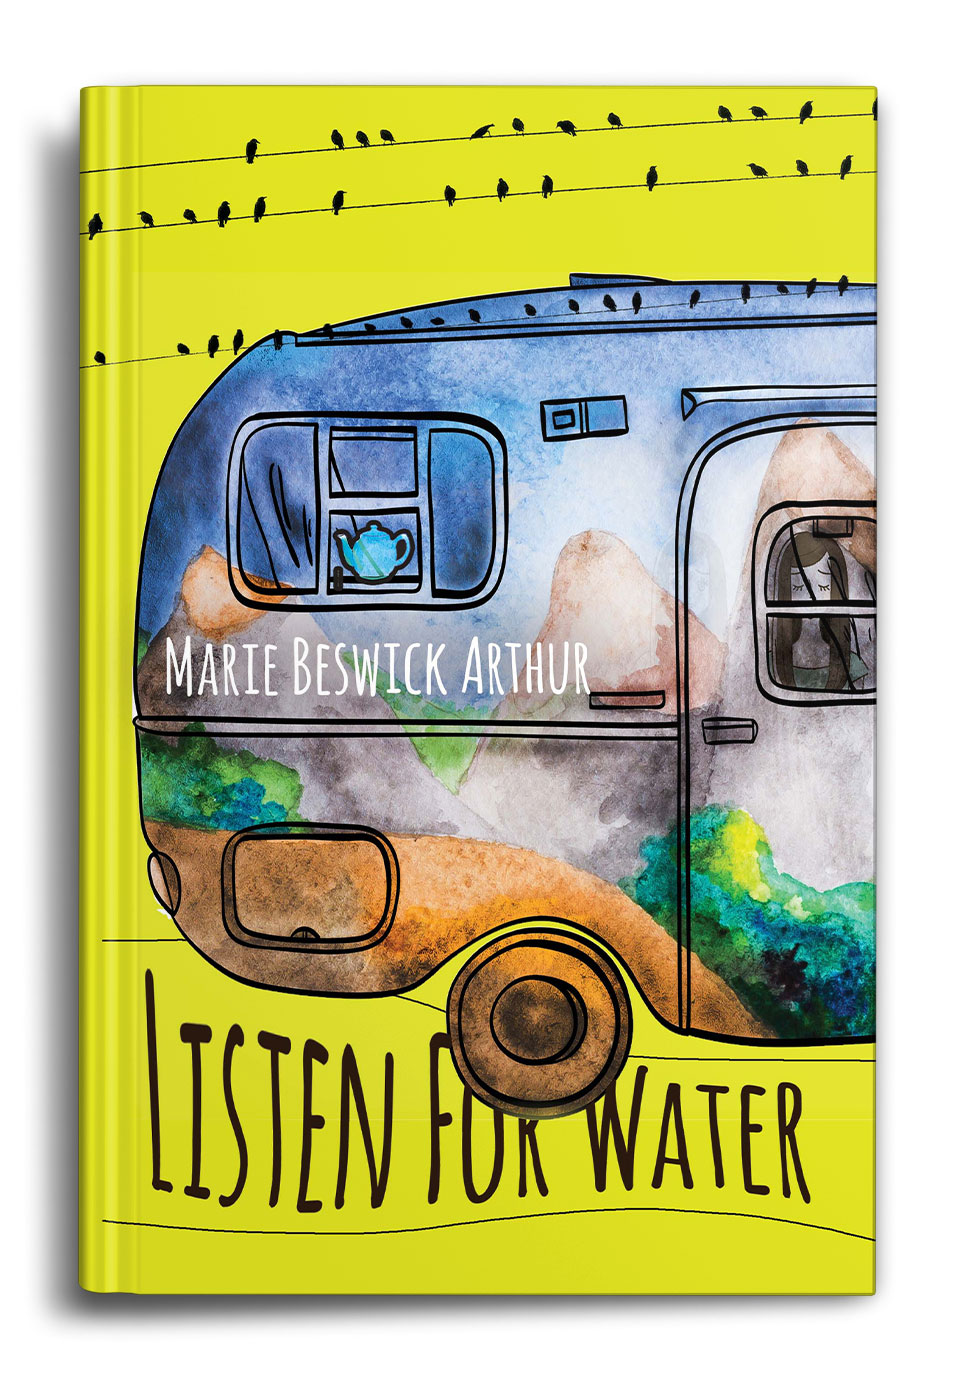 Listen-for-Water-by-Marie-Beswick-Arthur